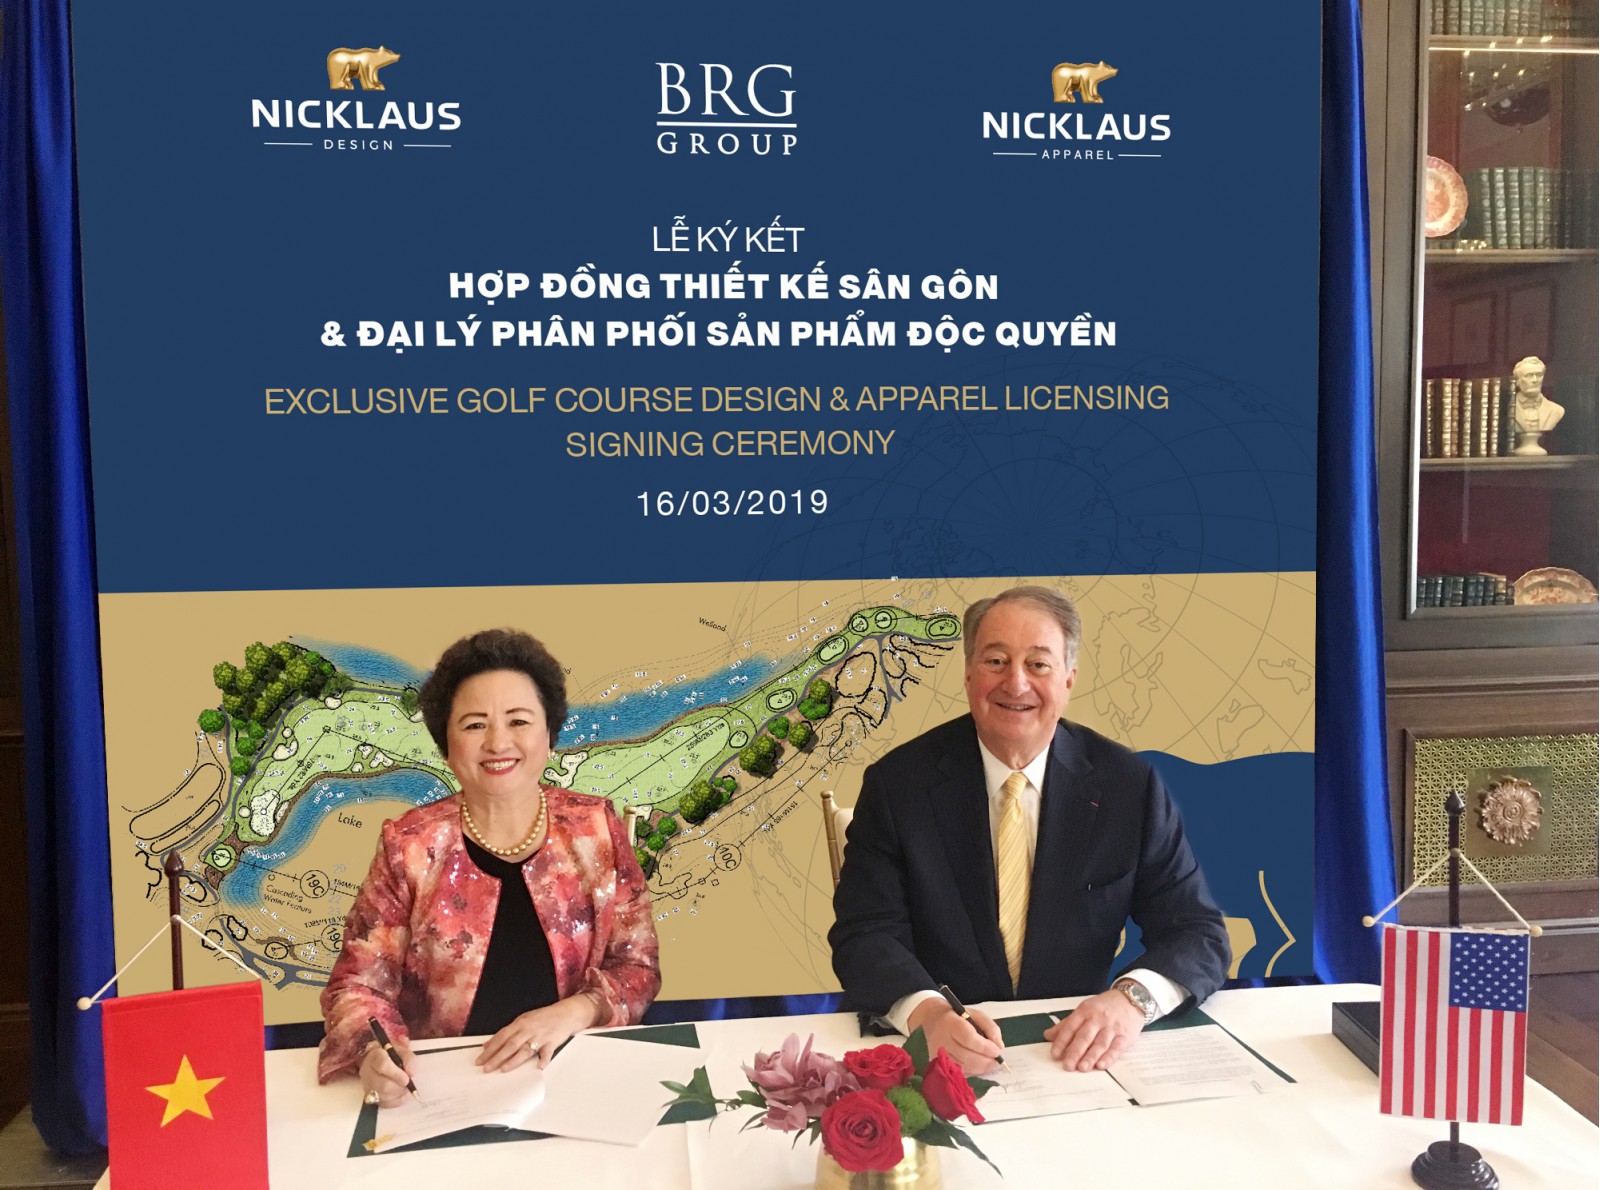 Madame Nguyễn Thị Nga, Chủ tịch Tập đoàn BRG và Ông Howard Milstein, Chủ tịch Điều hành The Nicklaus Companies tại Lễ ký kết hợp đồng thiết kế sân golf và đại lý phân phối sản phẩm độc quyền